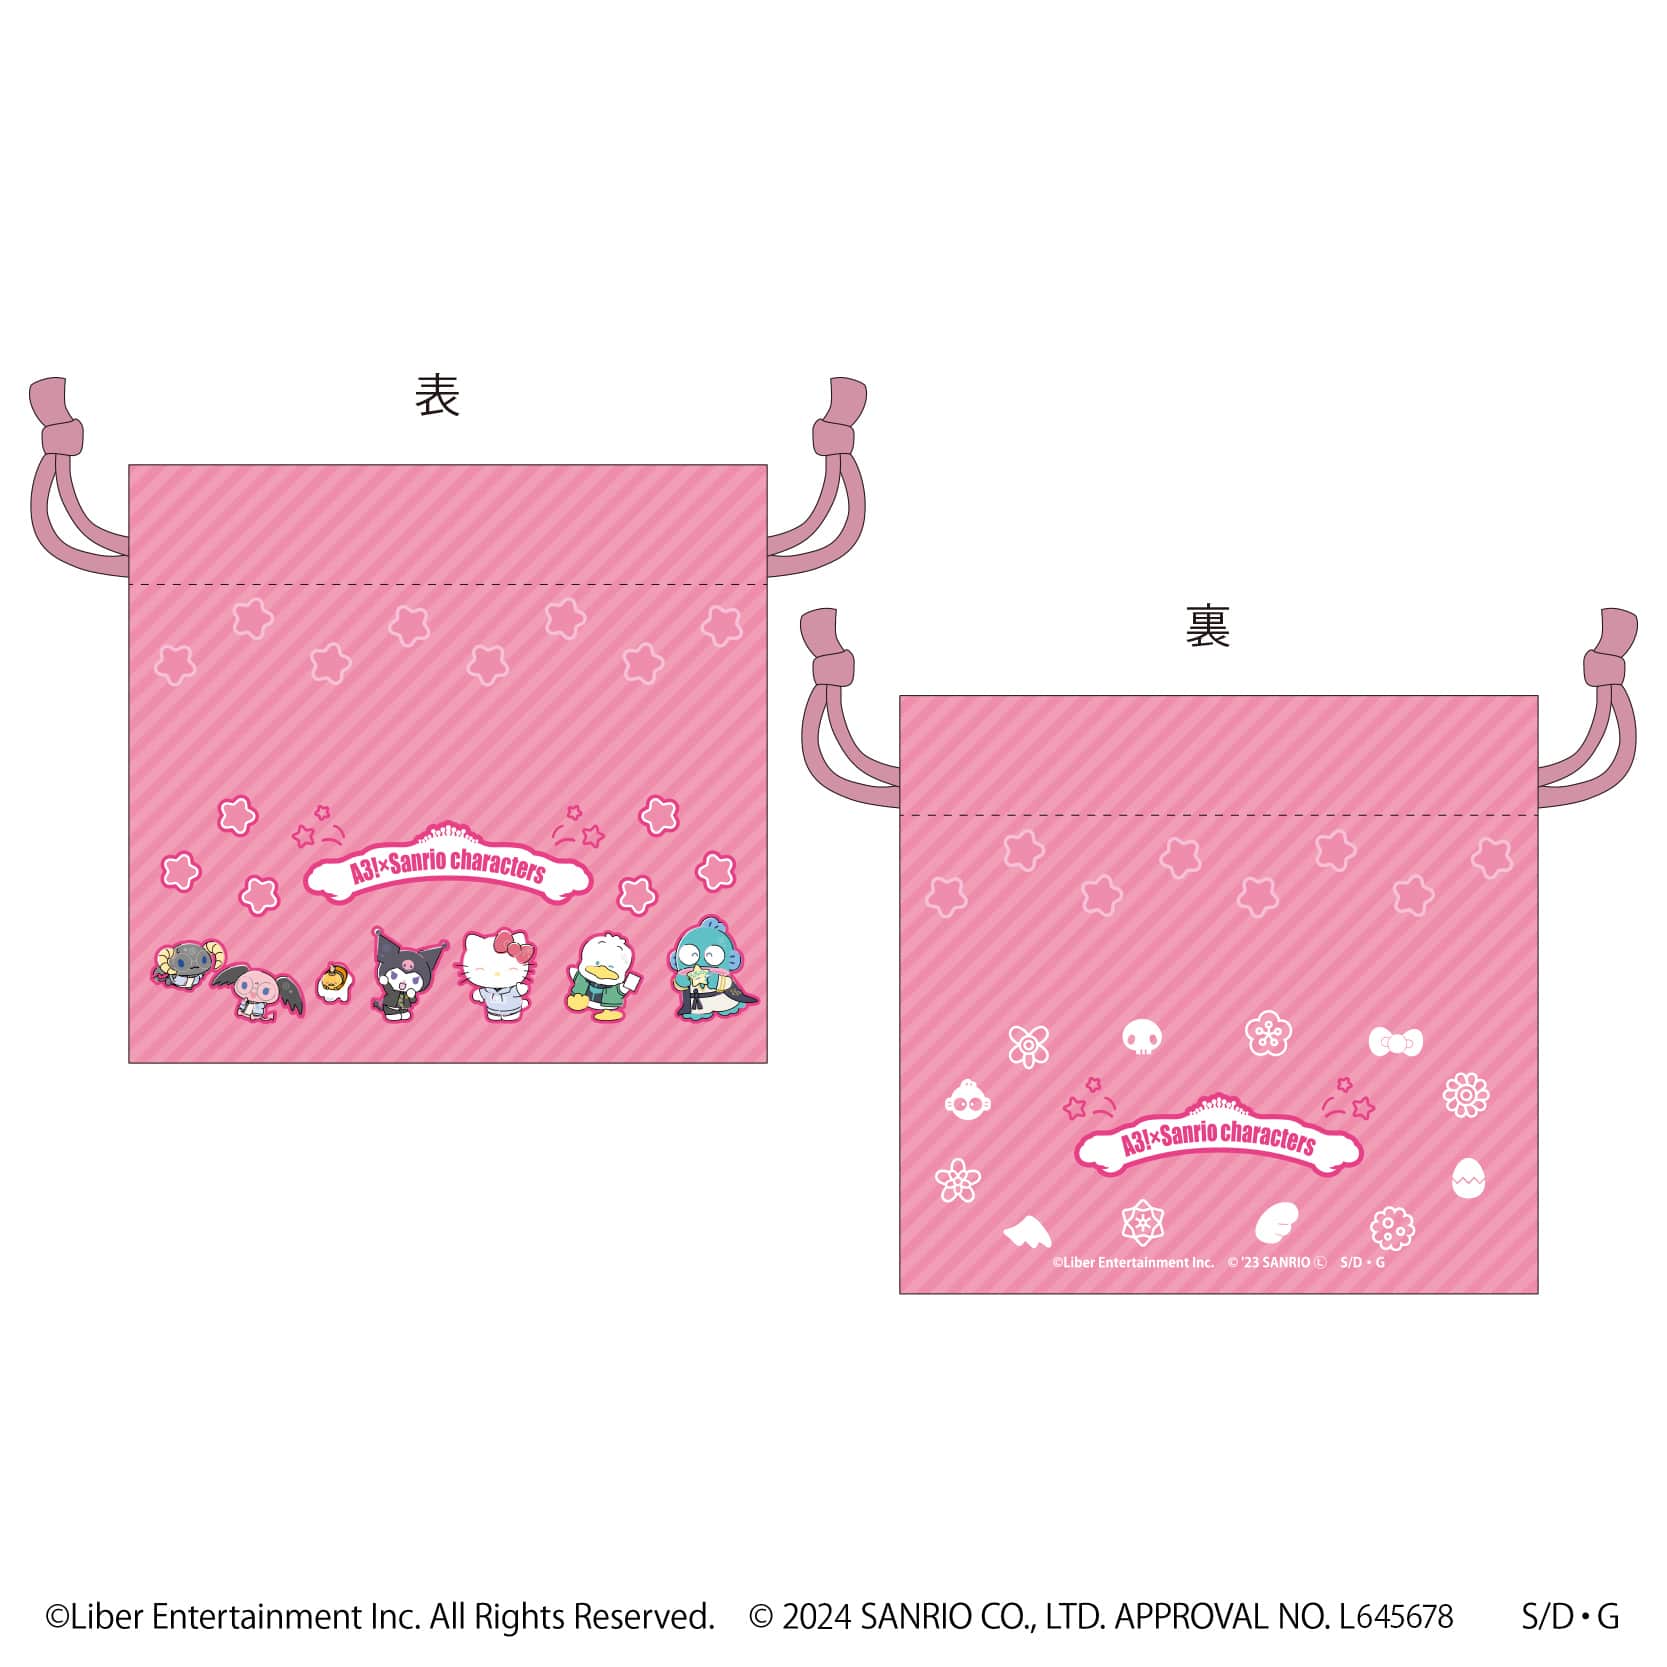 サテン生地巾着「A3!×Sanrio characters」01/春組 整列デザイン(ミニキャライラスト)